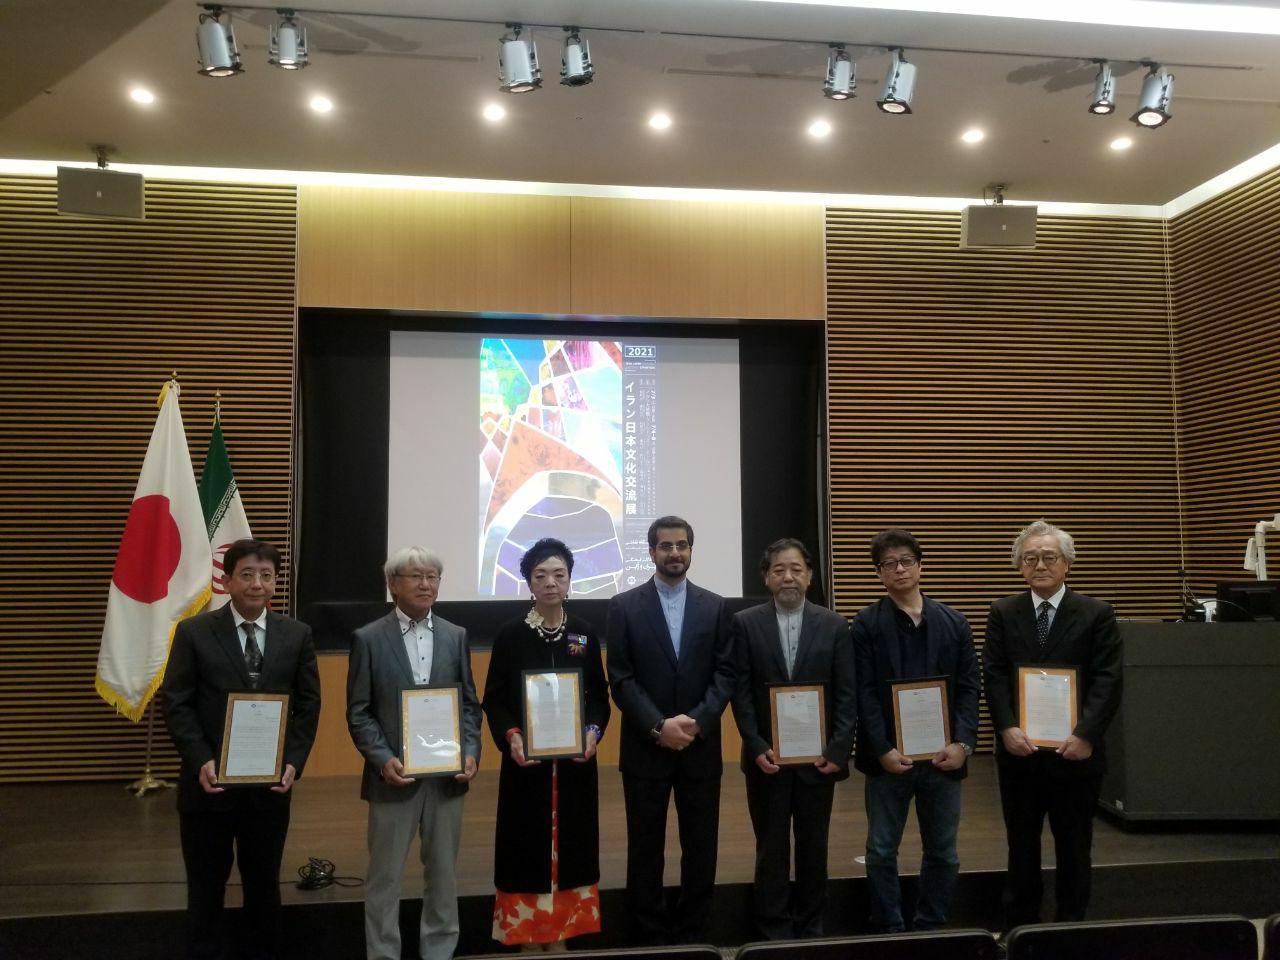 نمایشگاه نقاشی تبادلات فرهنگی ایران و ژاپن